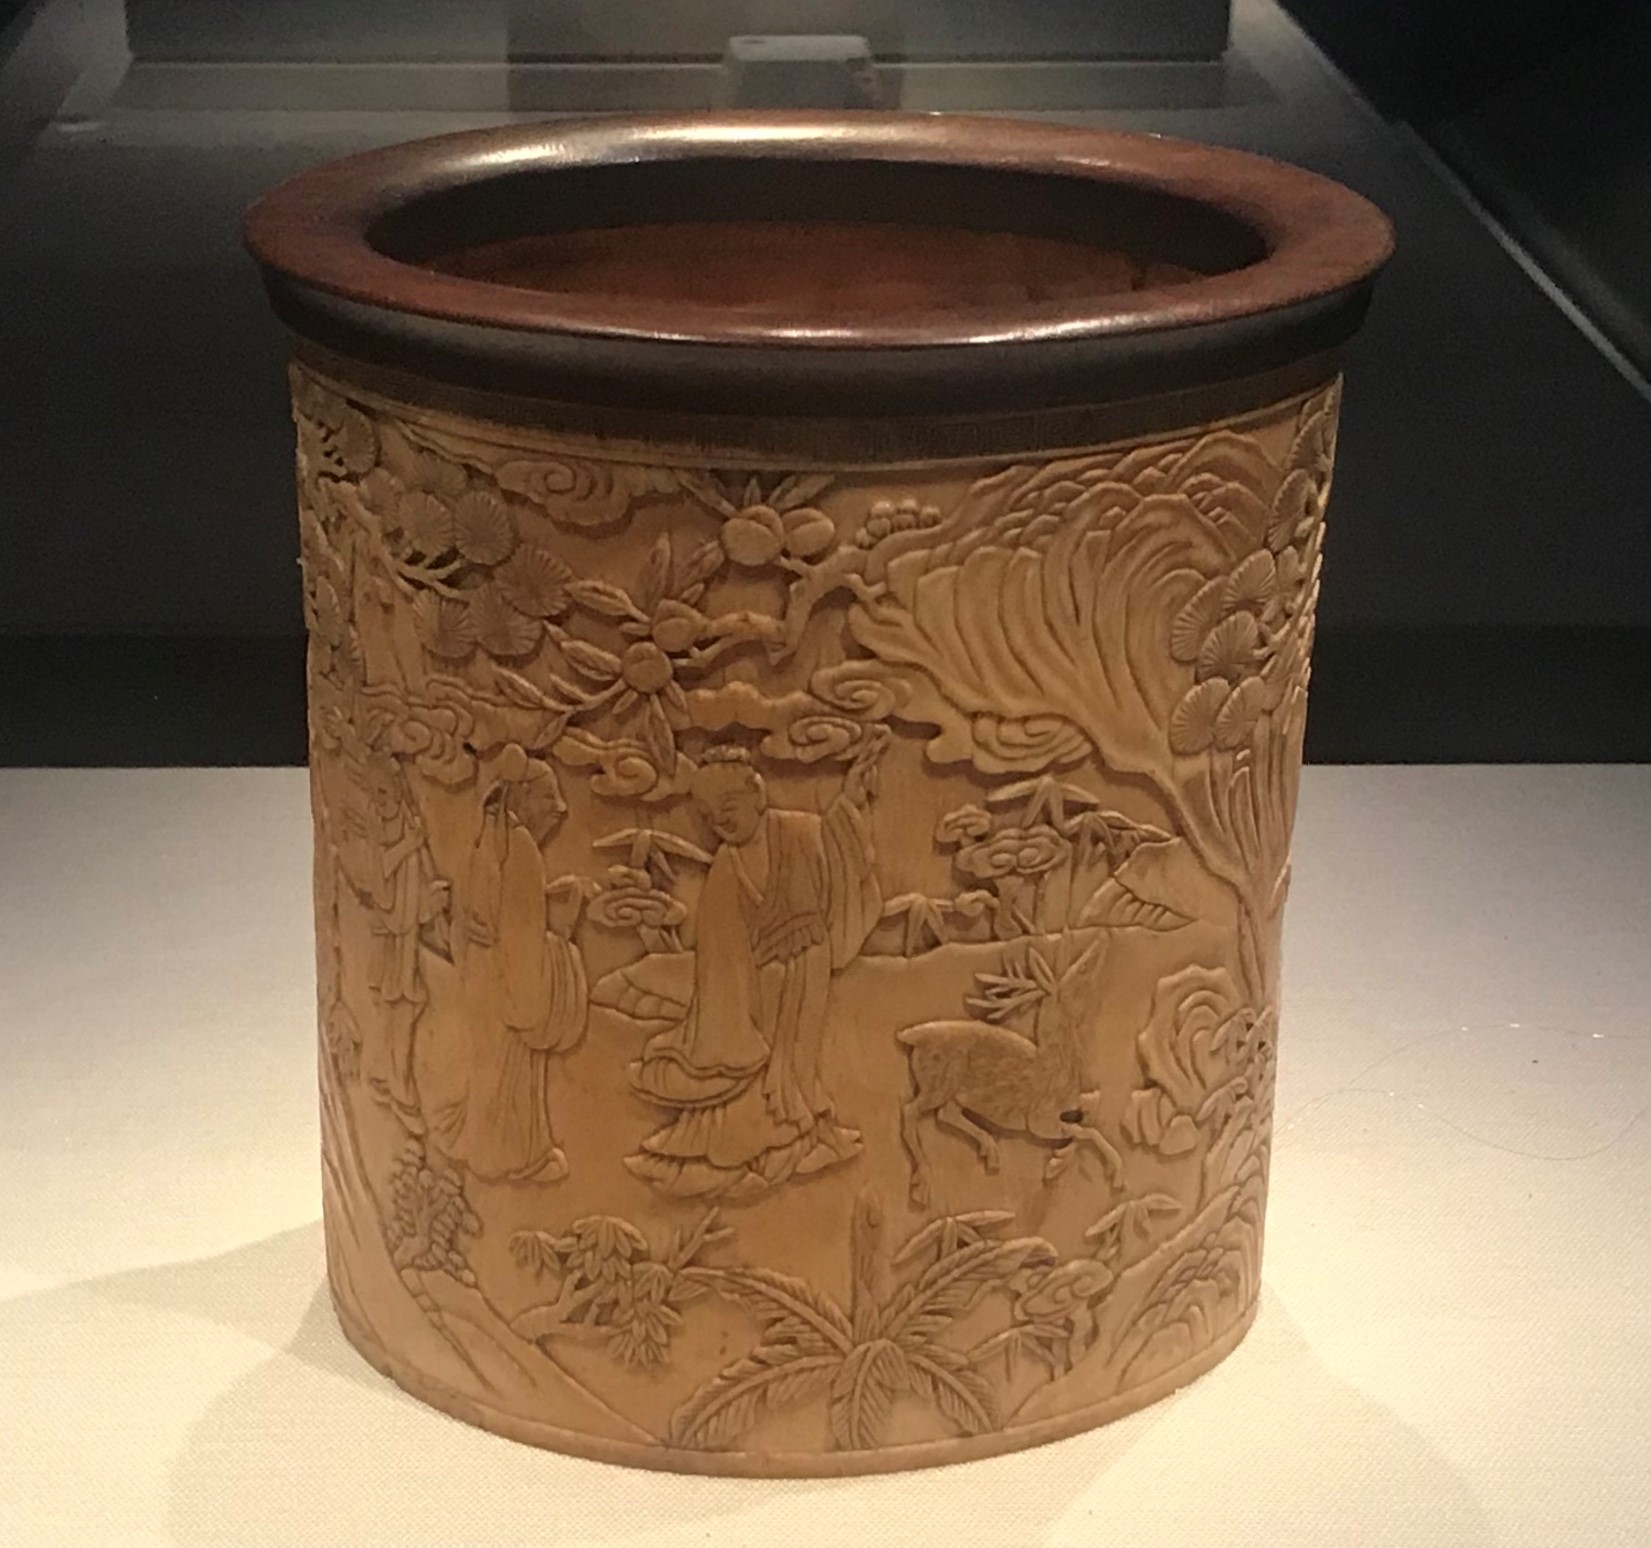 象牙彫筆筒-明時代-工藝美術館館-四川博物館-成都